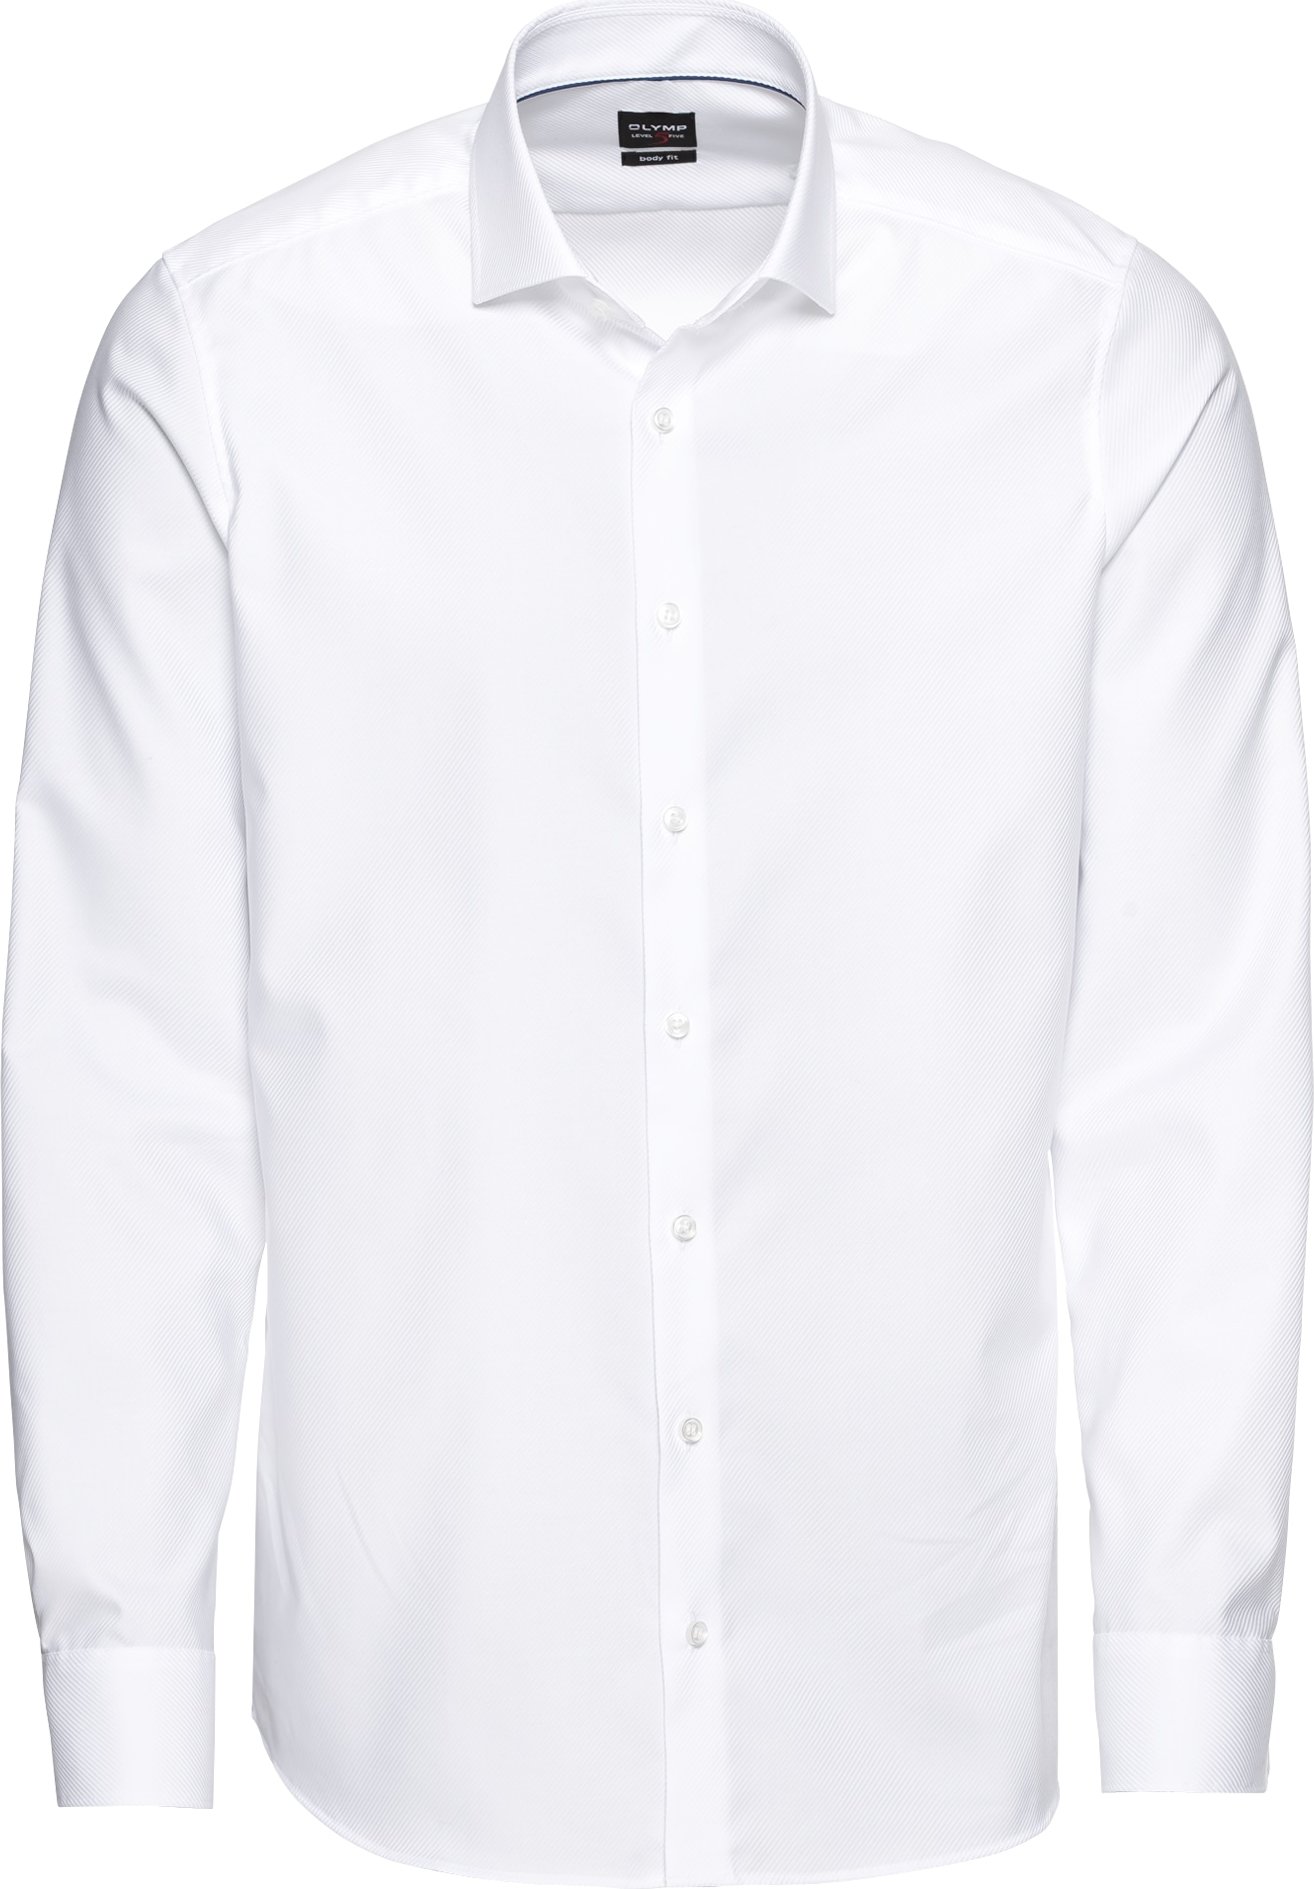 OLYMP Společenská košile 'Level 5' bílá